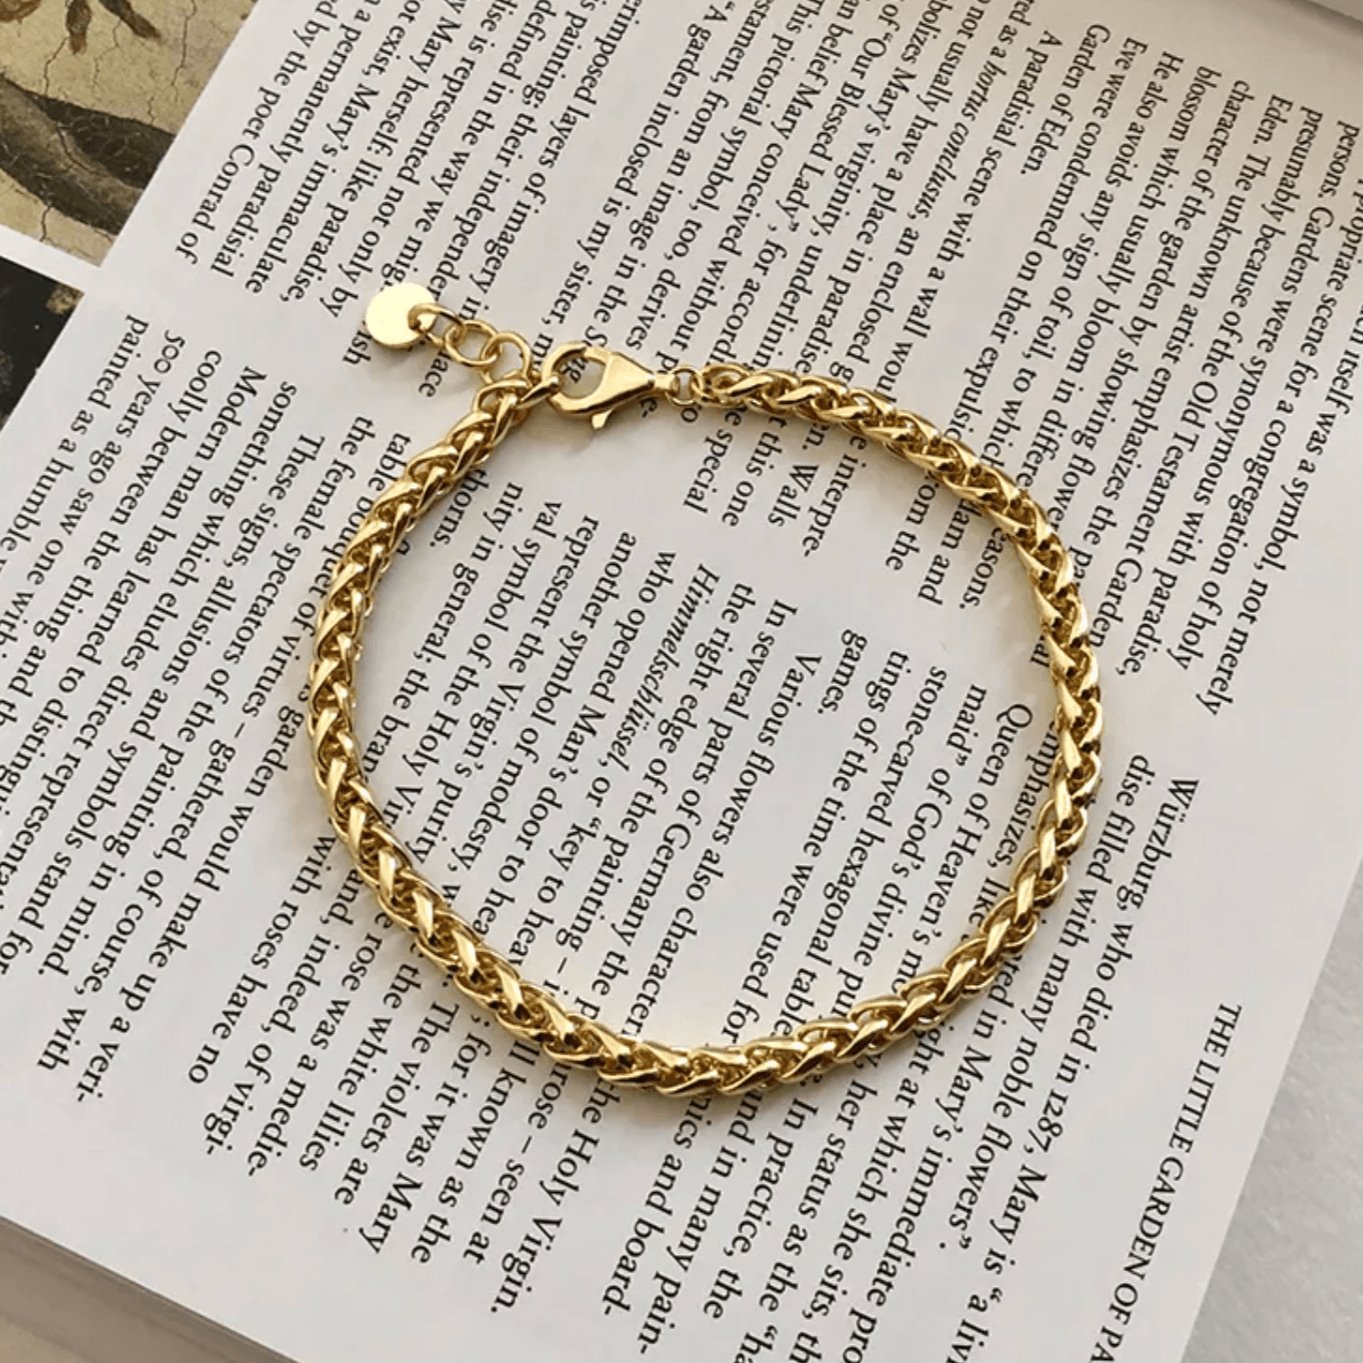 Cute spiga gold chain bracelet